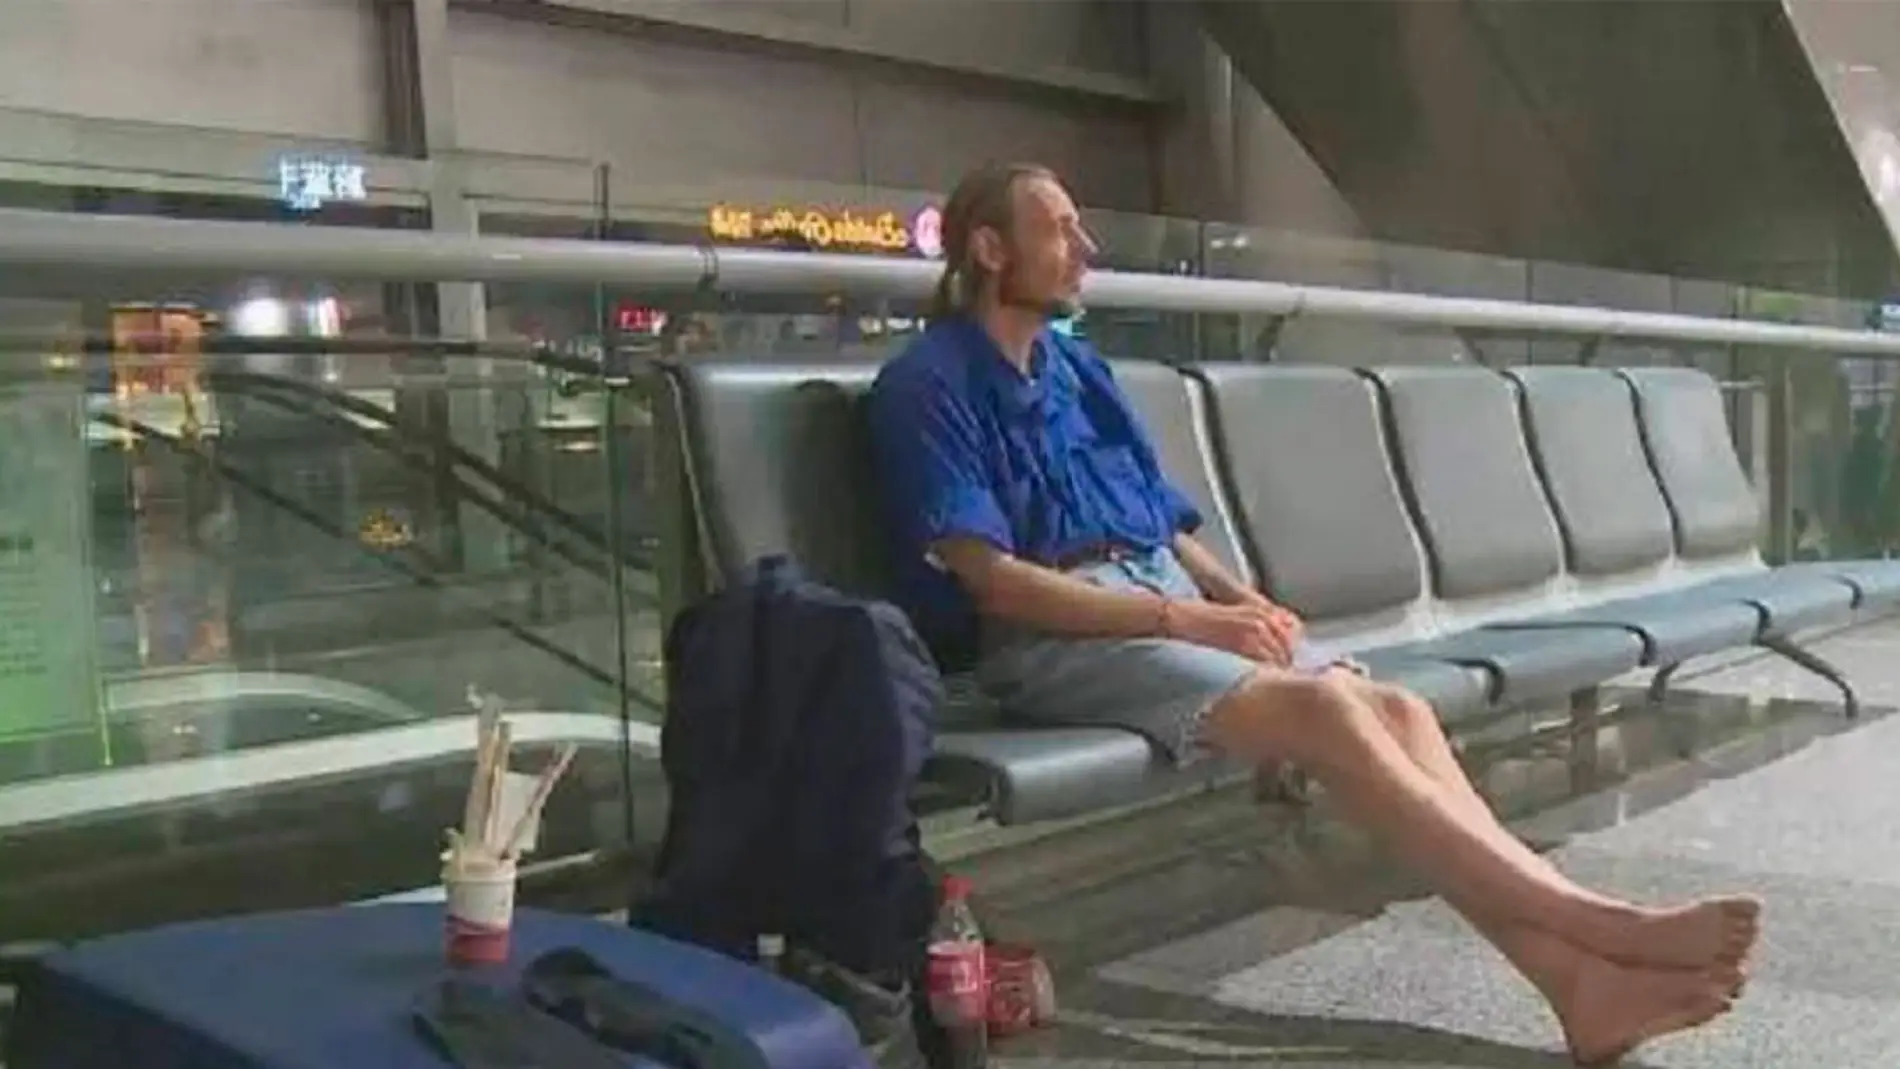 El holandés de 41 años en el aeropuerto